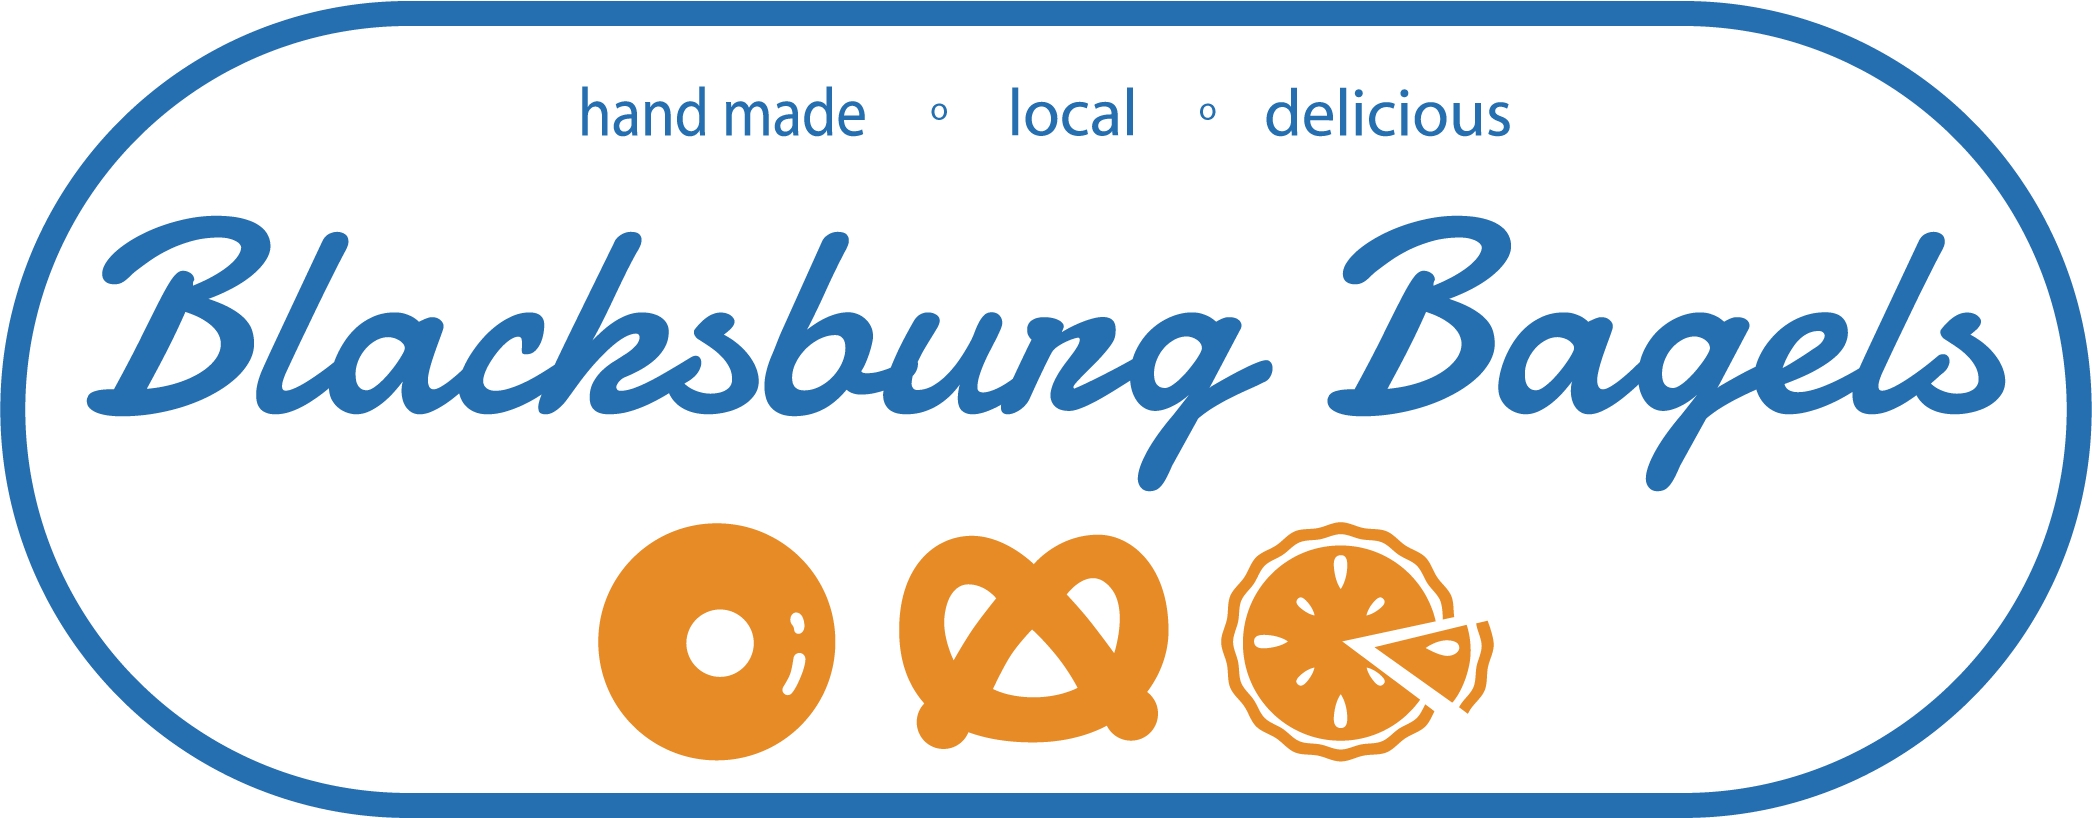 Blacksburg Bagels Website